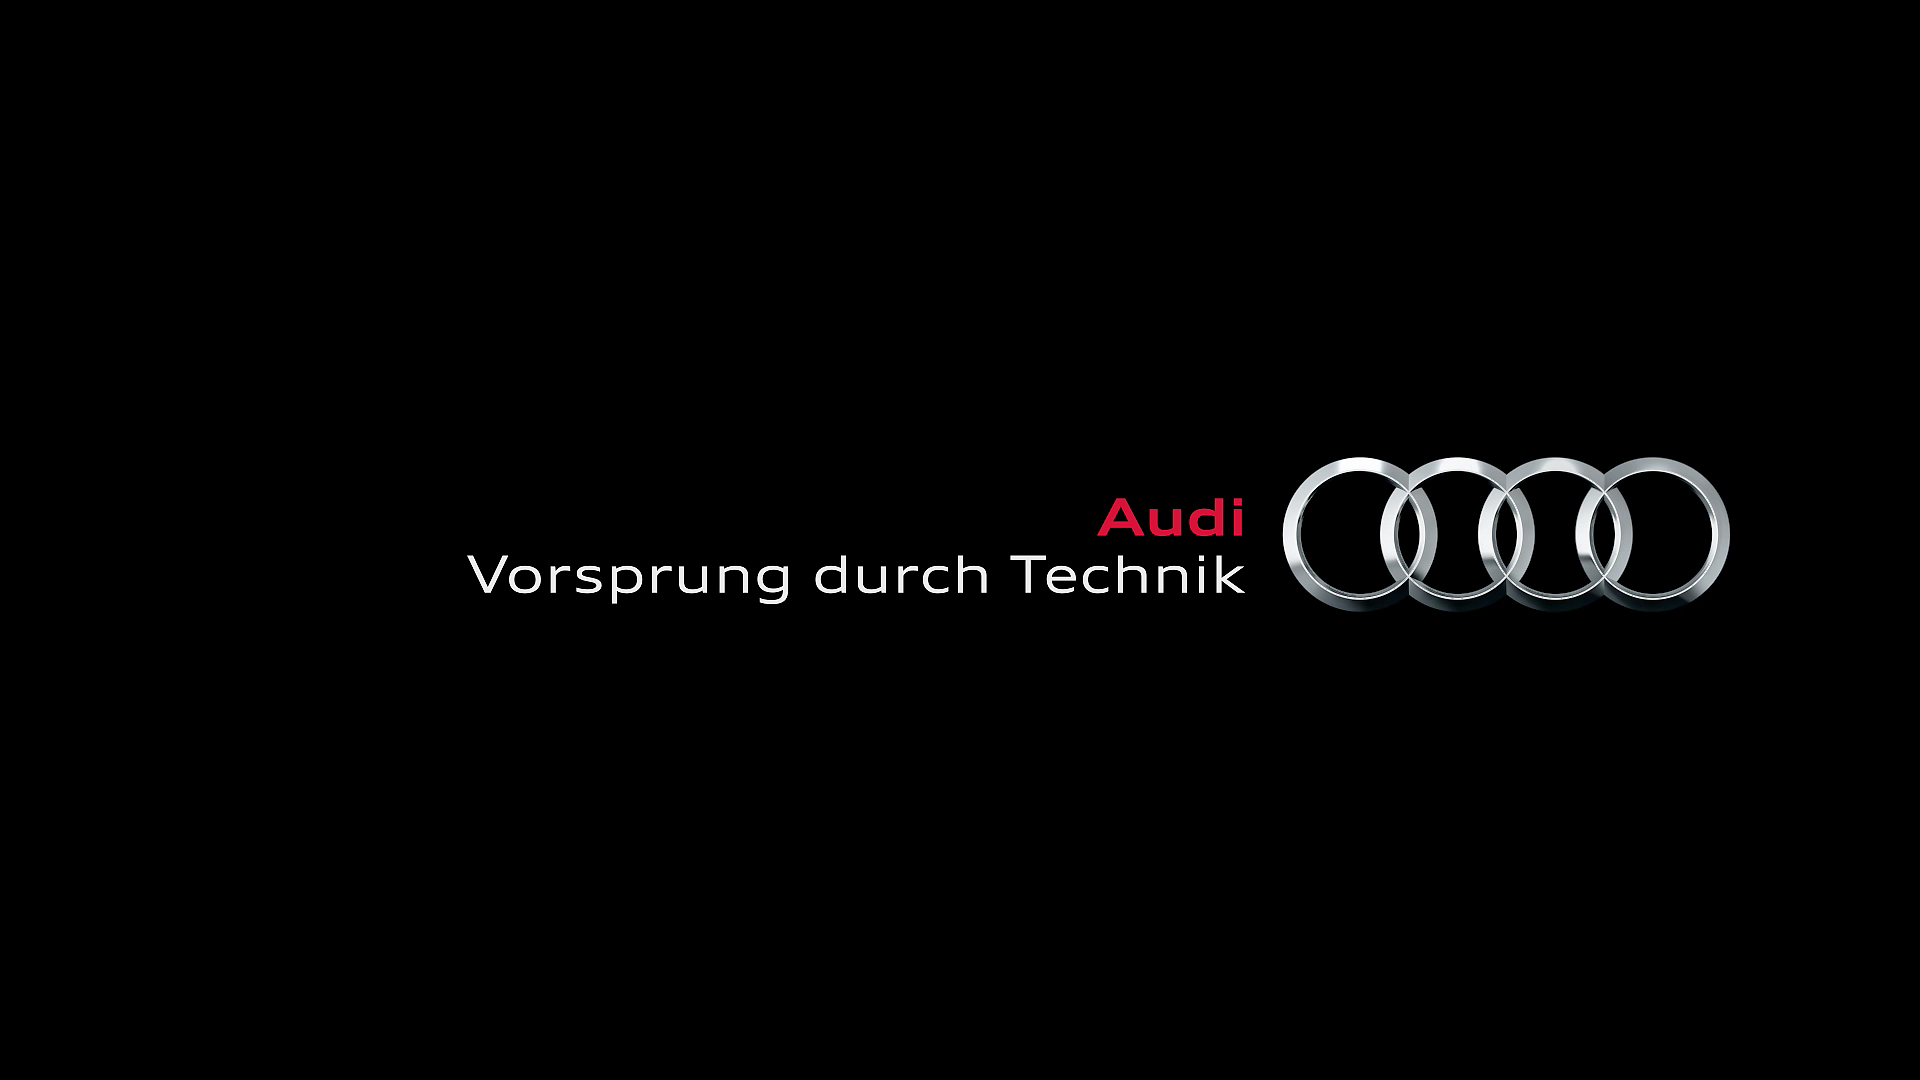 Full Hd Audi Logo Wallpapers